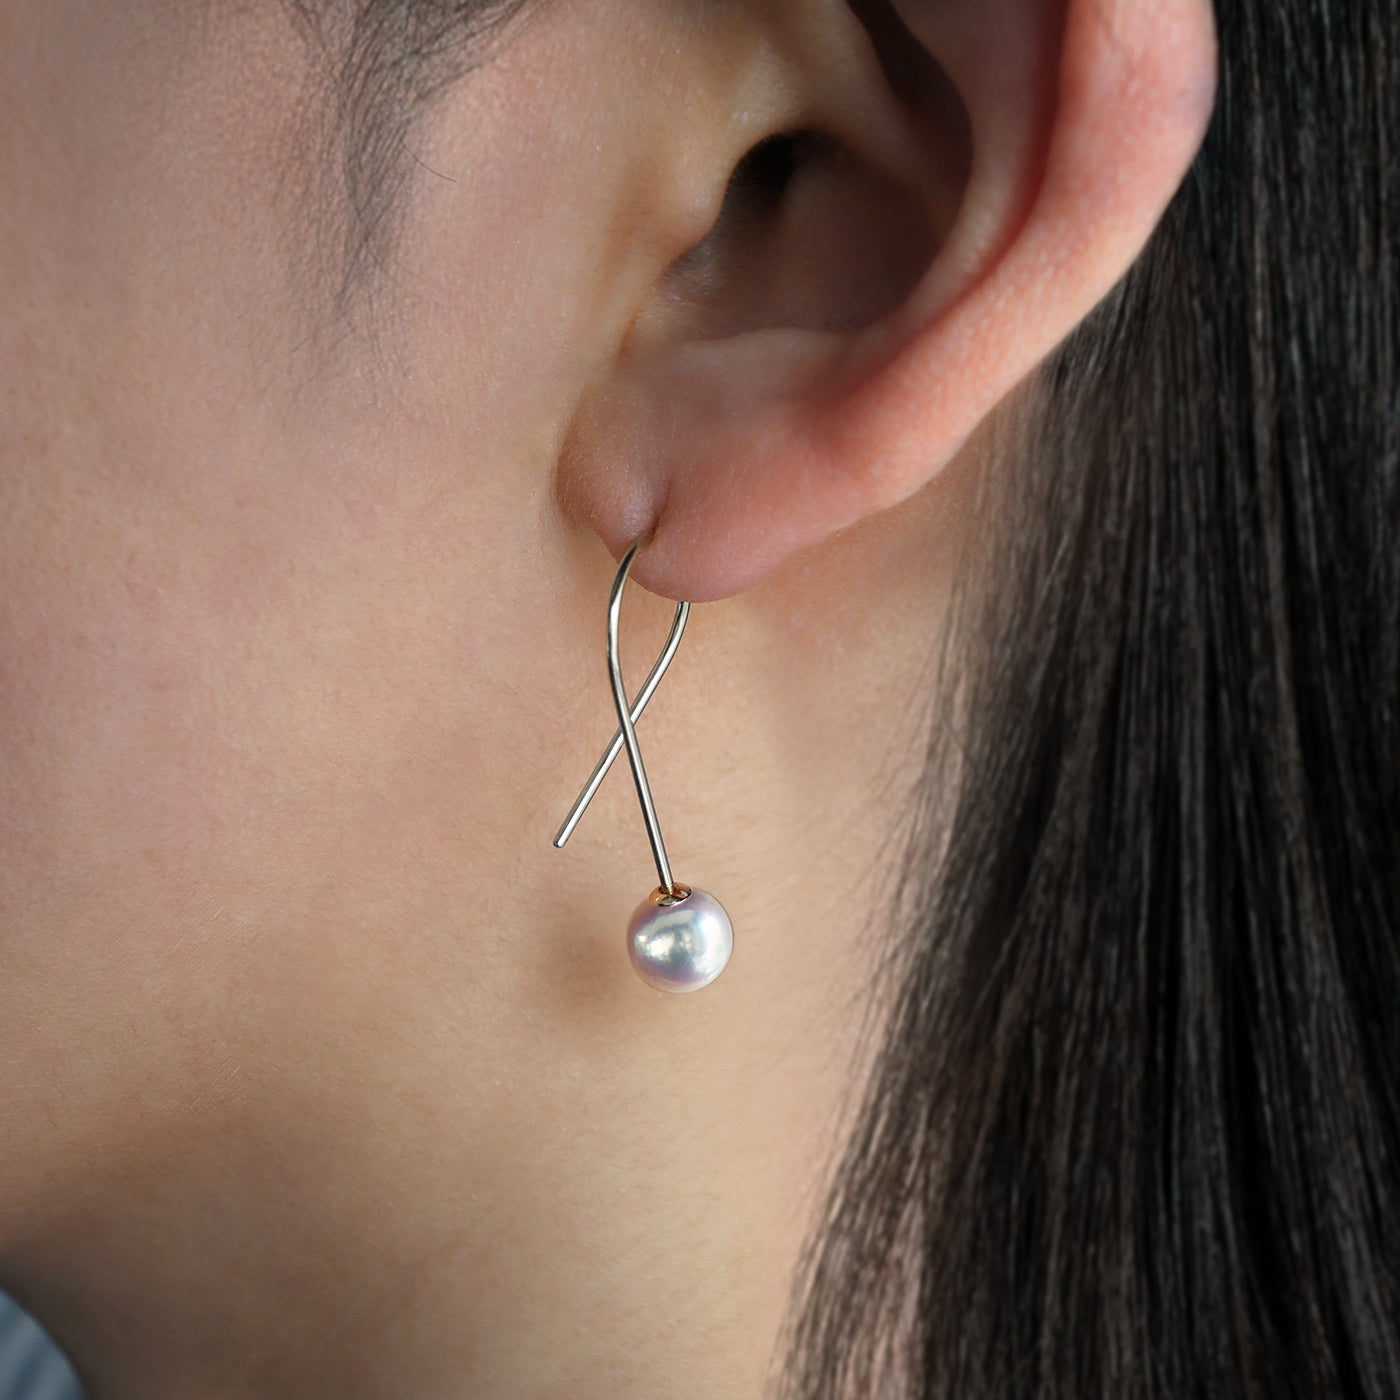 【BASE PARTS】Pt900 Twist Hook Pierced Earring - For Left